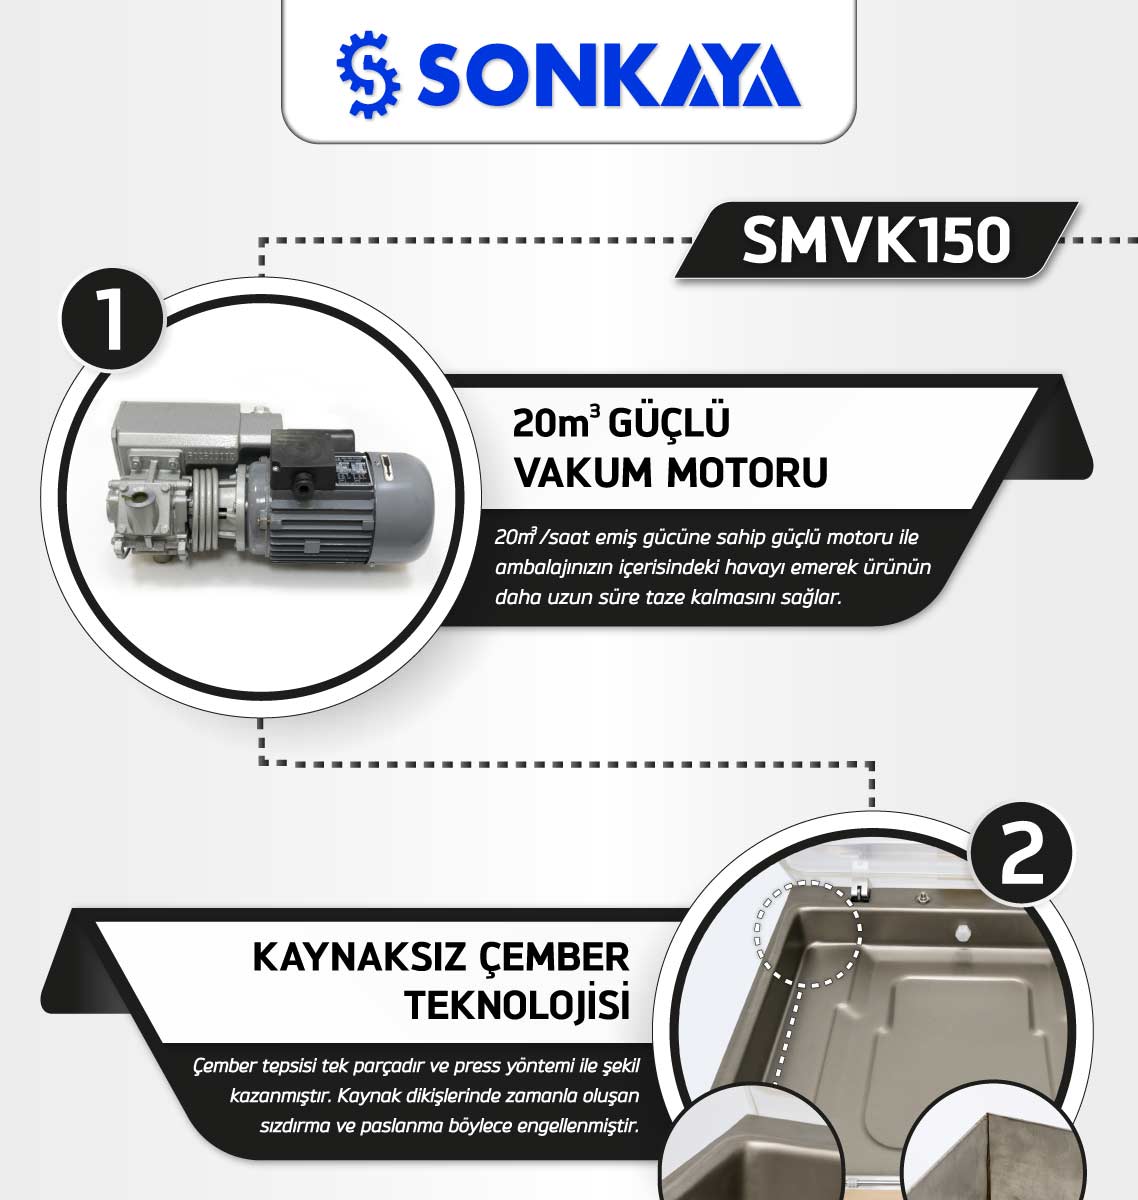 Sonkaya SMVK150 Vakum Paketleme Makinası Özellikleri - 1